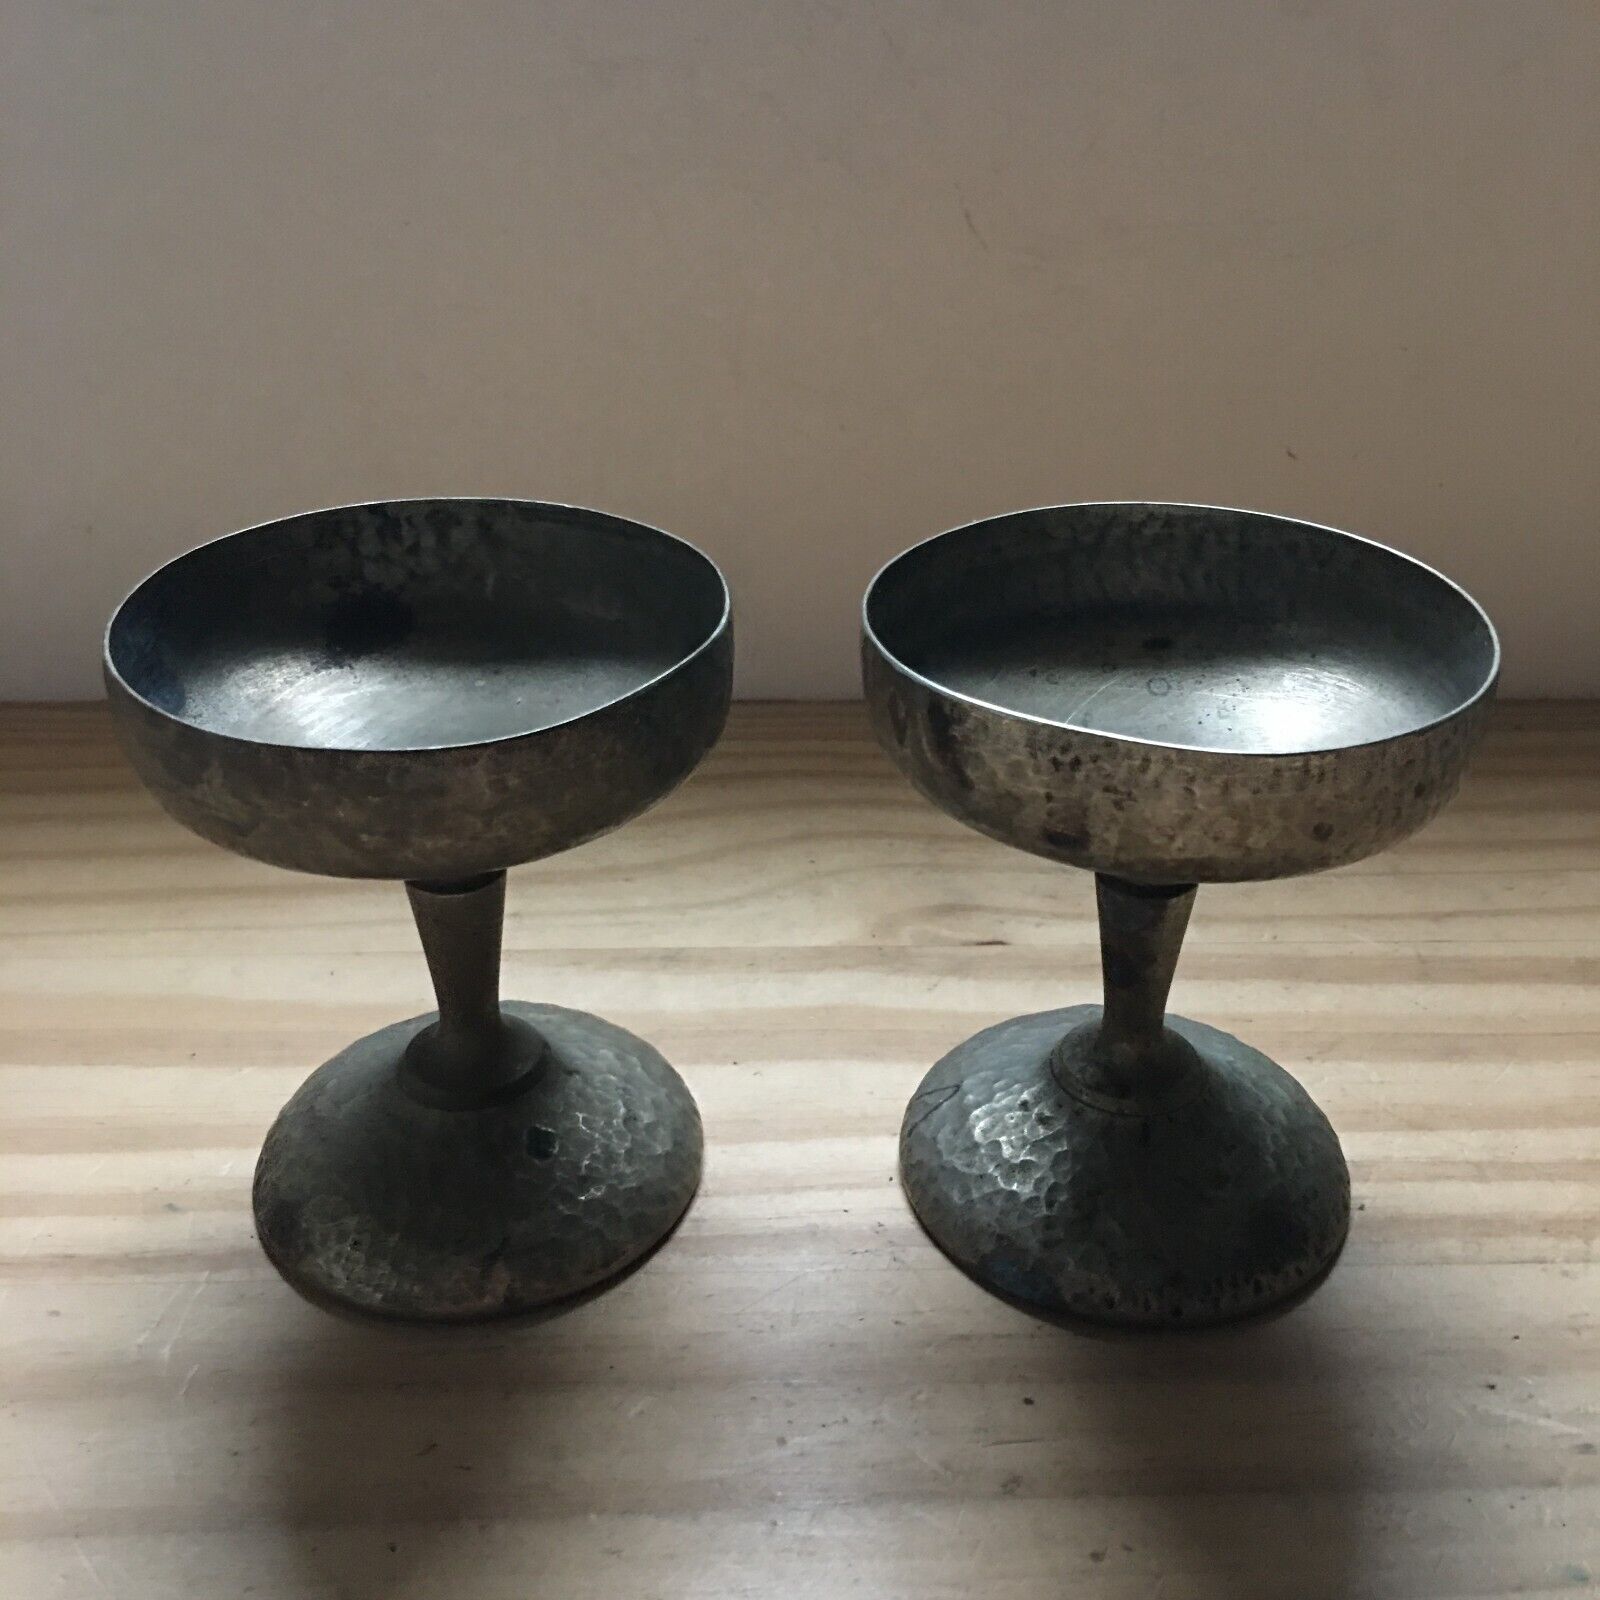 2 Vintage Cecilware Nickel Silver Soldered Goblet Drinking Glasses Cups Hammered